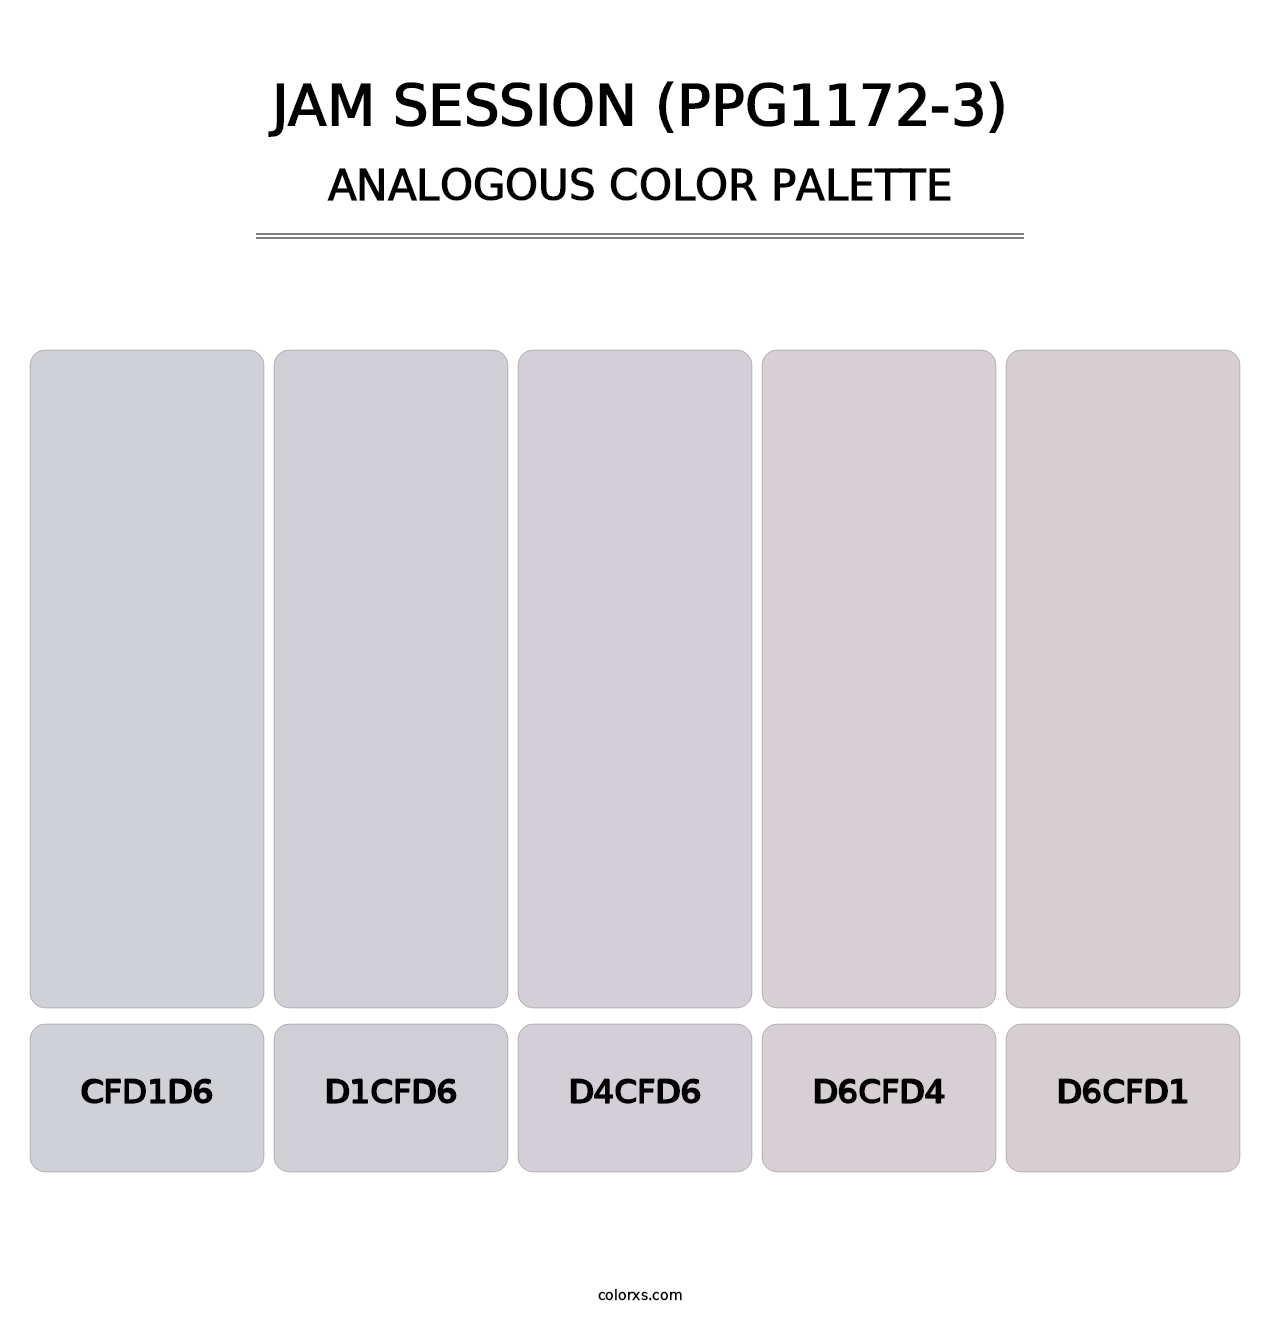 Jam Session (PPG1172-3) - Analogous Color Palette